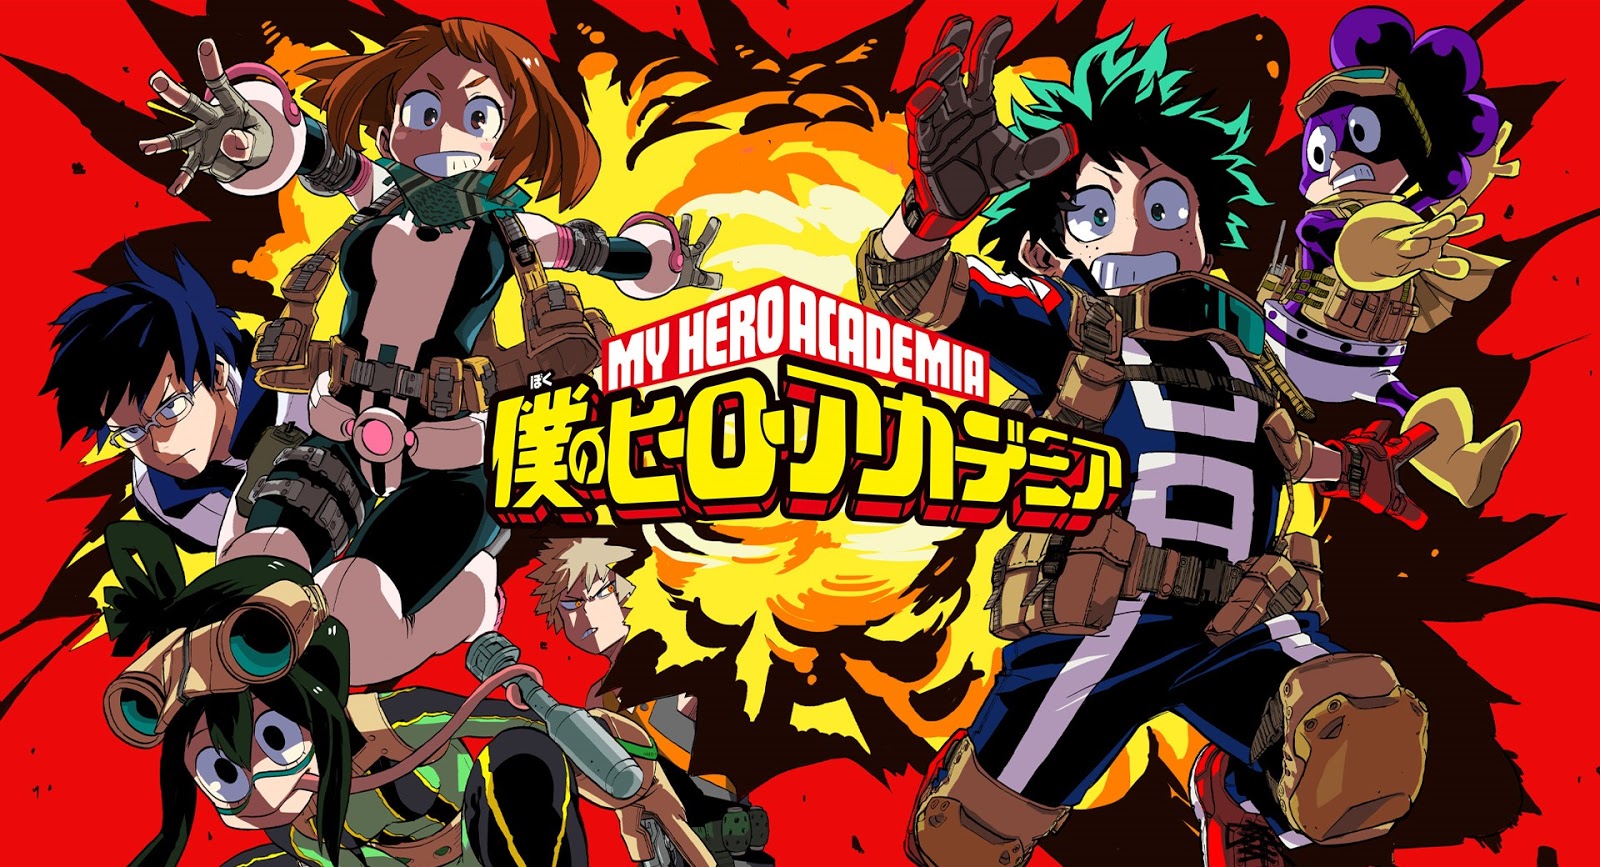 Primeiras Impressões - Boku no Hero Academia 6 temporada - Anime